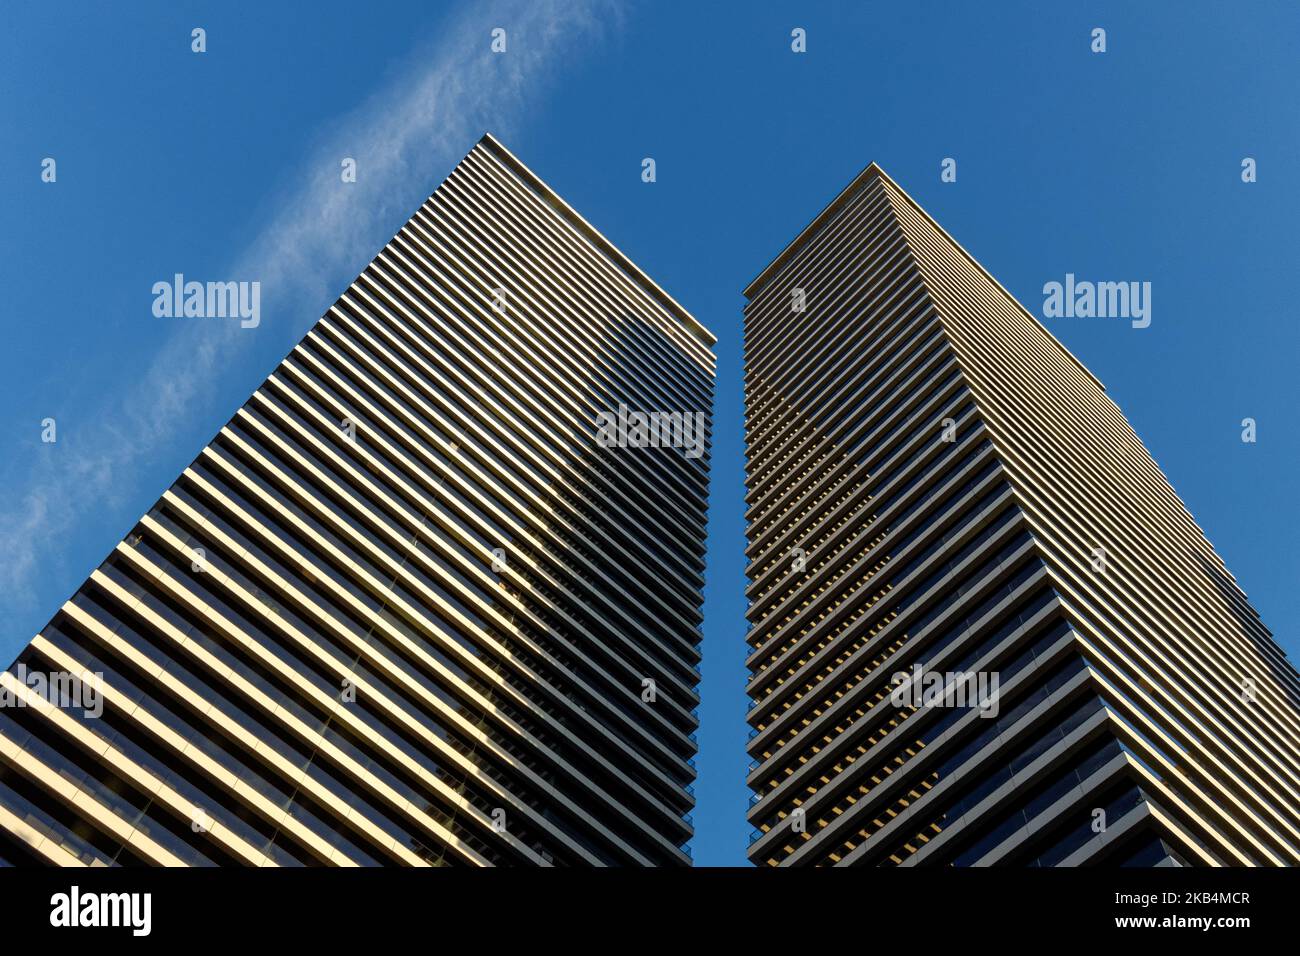 Wardian, gratte-ciel de tour résidentiel à Canary Wharf, Londres Angleterre Royaume-Uni Banque D'Images